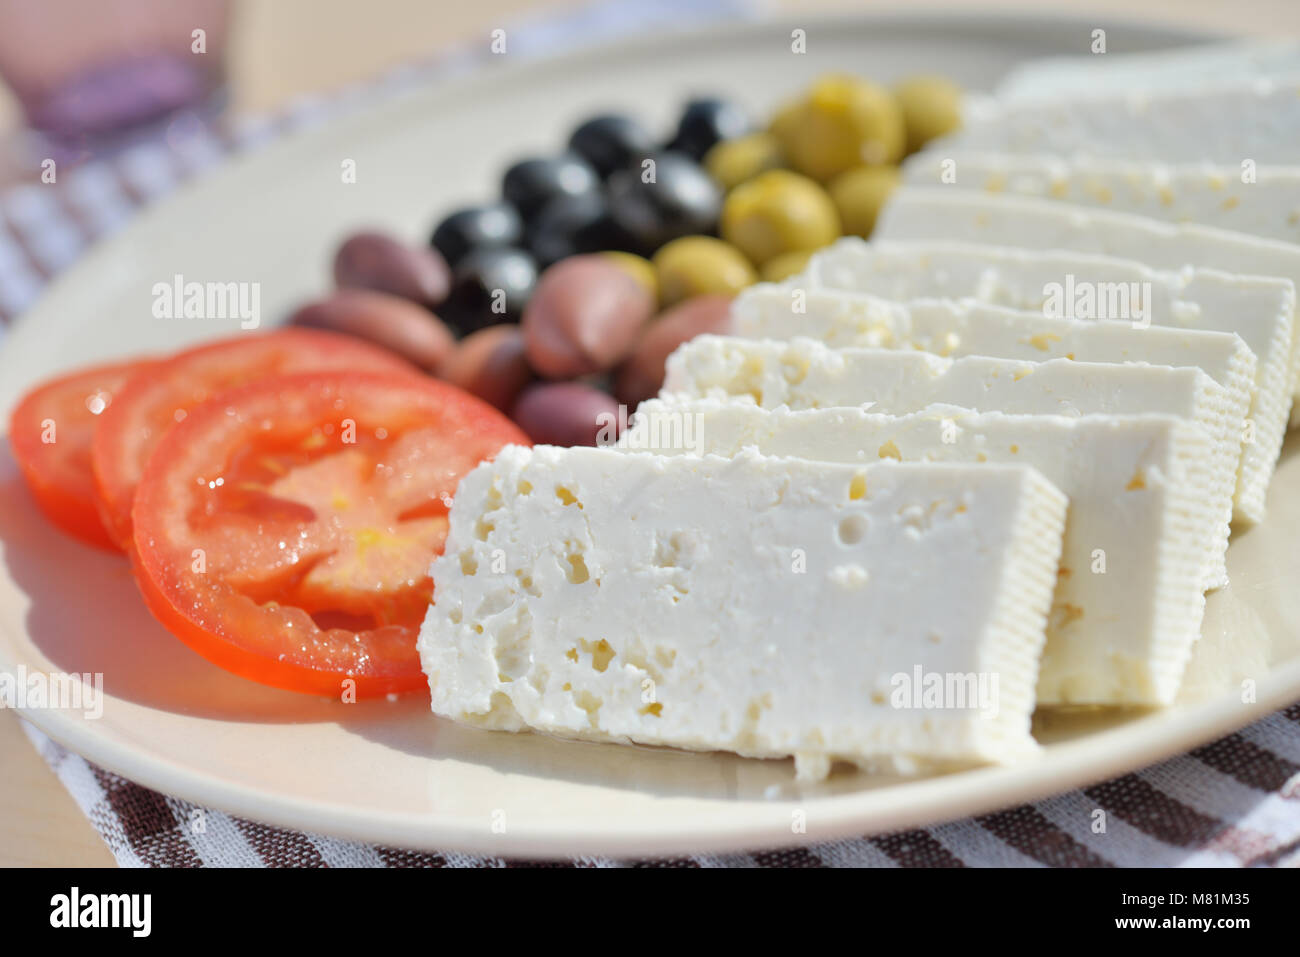 Fromage, olives, et les tranches de tomate sur une plaque Banque D'Images